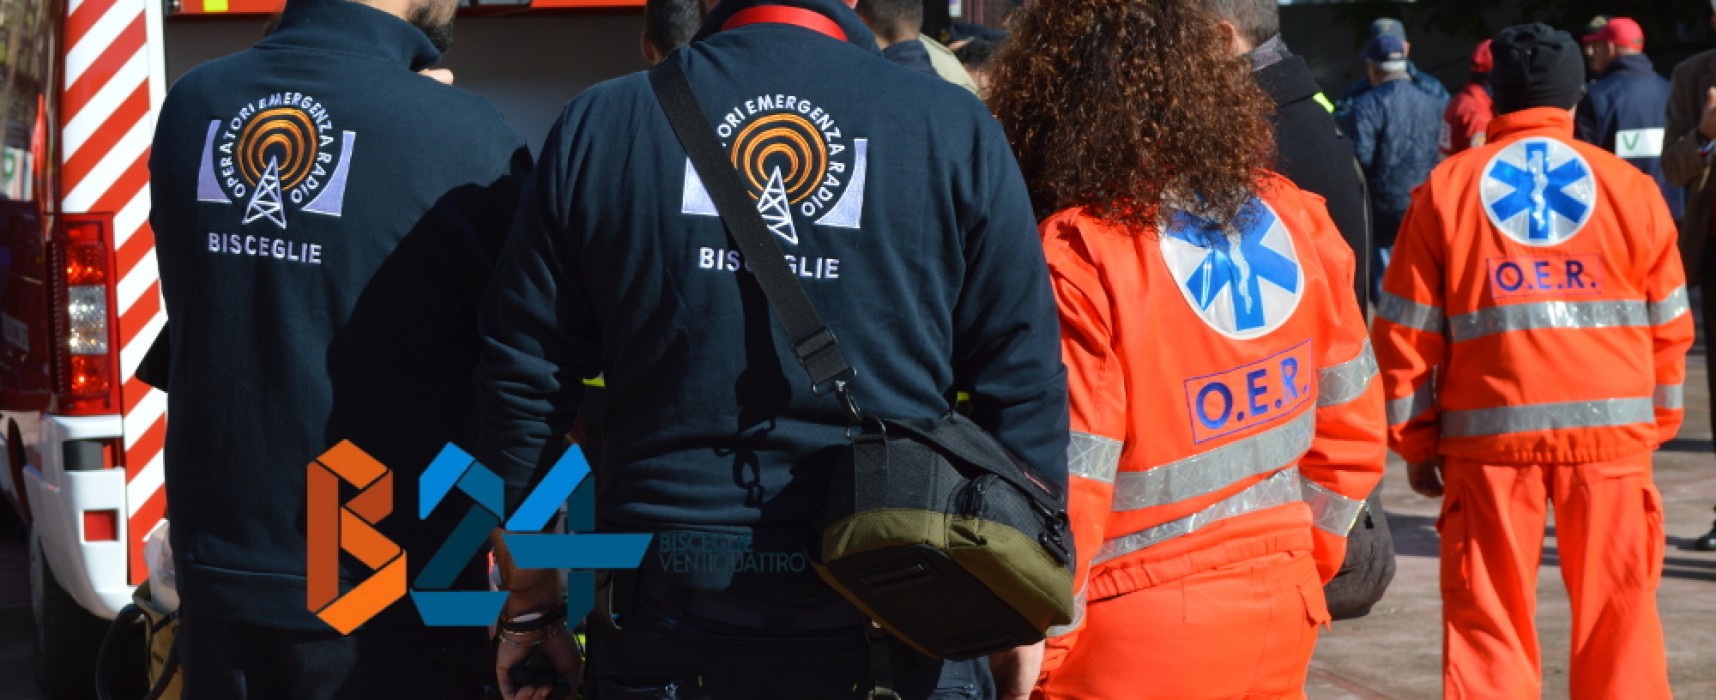 Il 2016 dell’Oer Bisceglie, tra attività di pronto soccorso e protezione civile